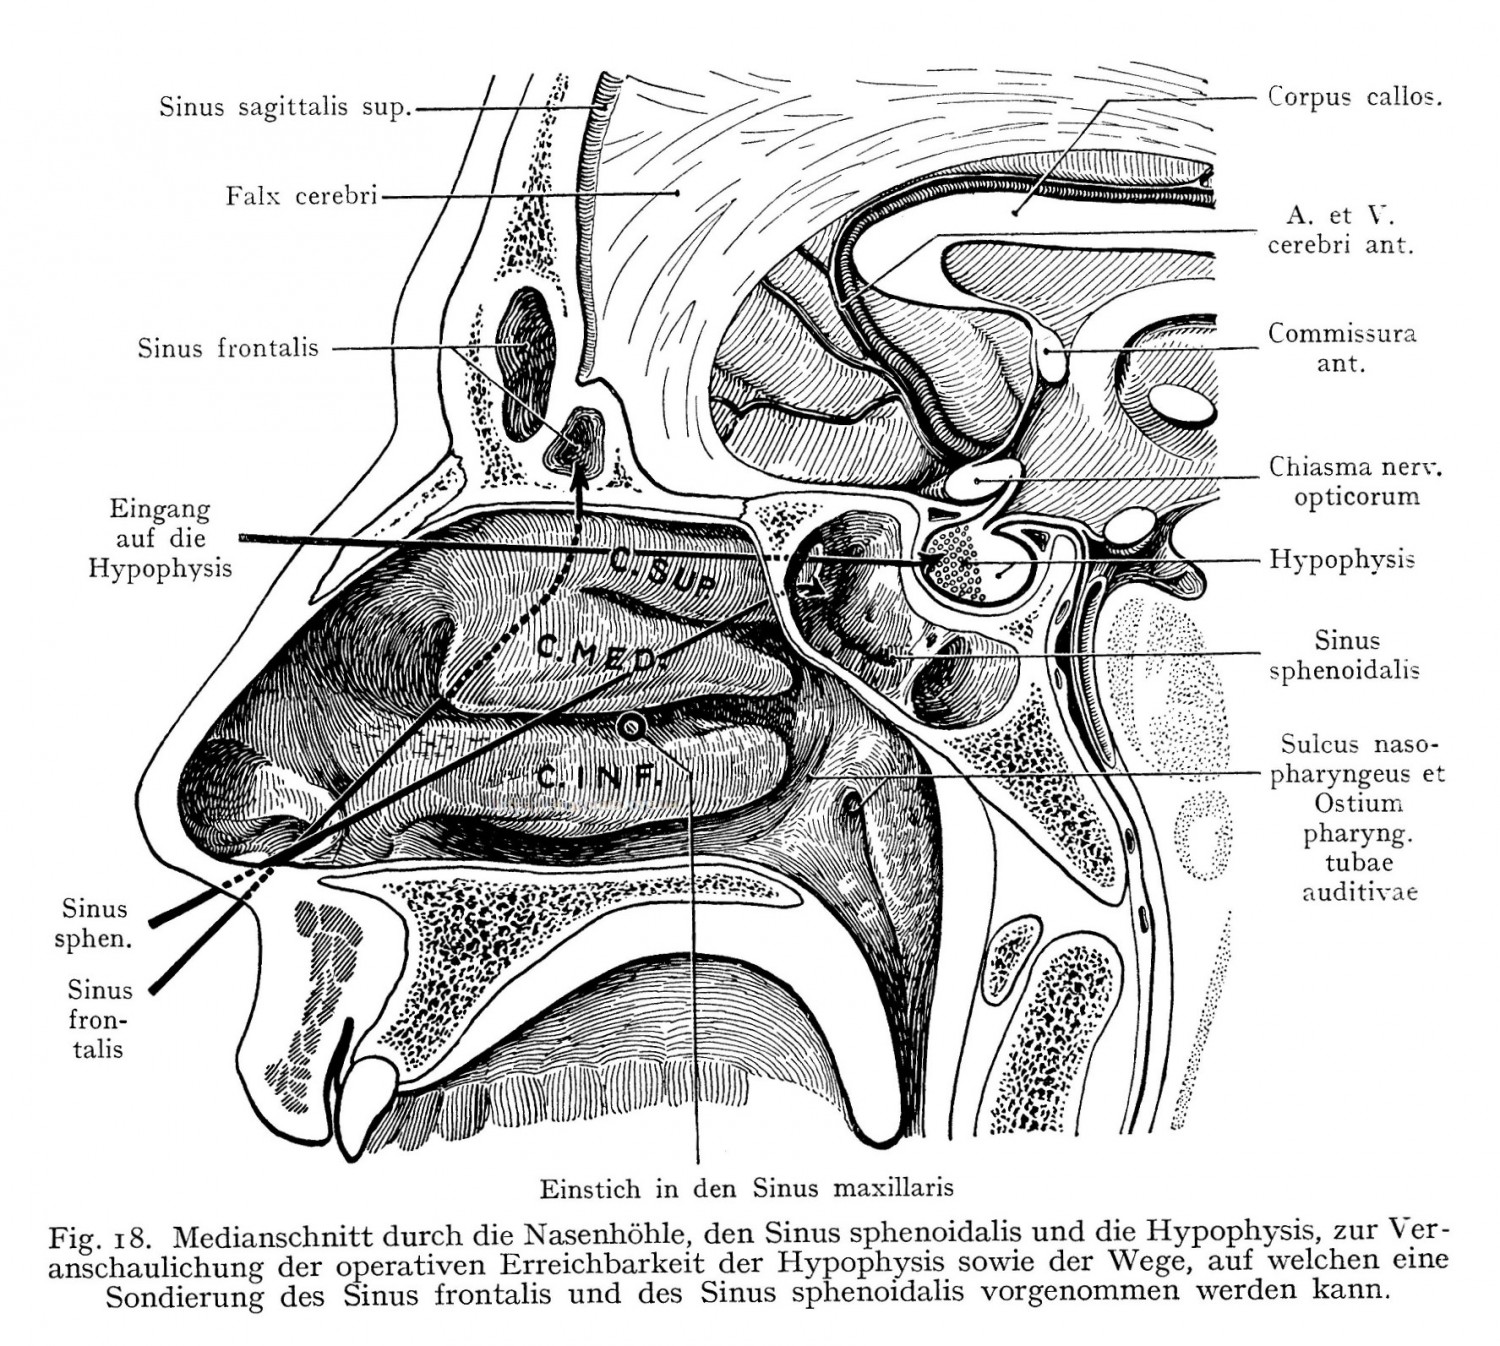 Medianschnitt durch die Nasenhöhle, den Sinus sphenoidalis und die Hypophysis